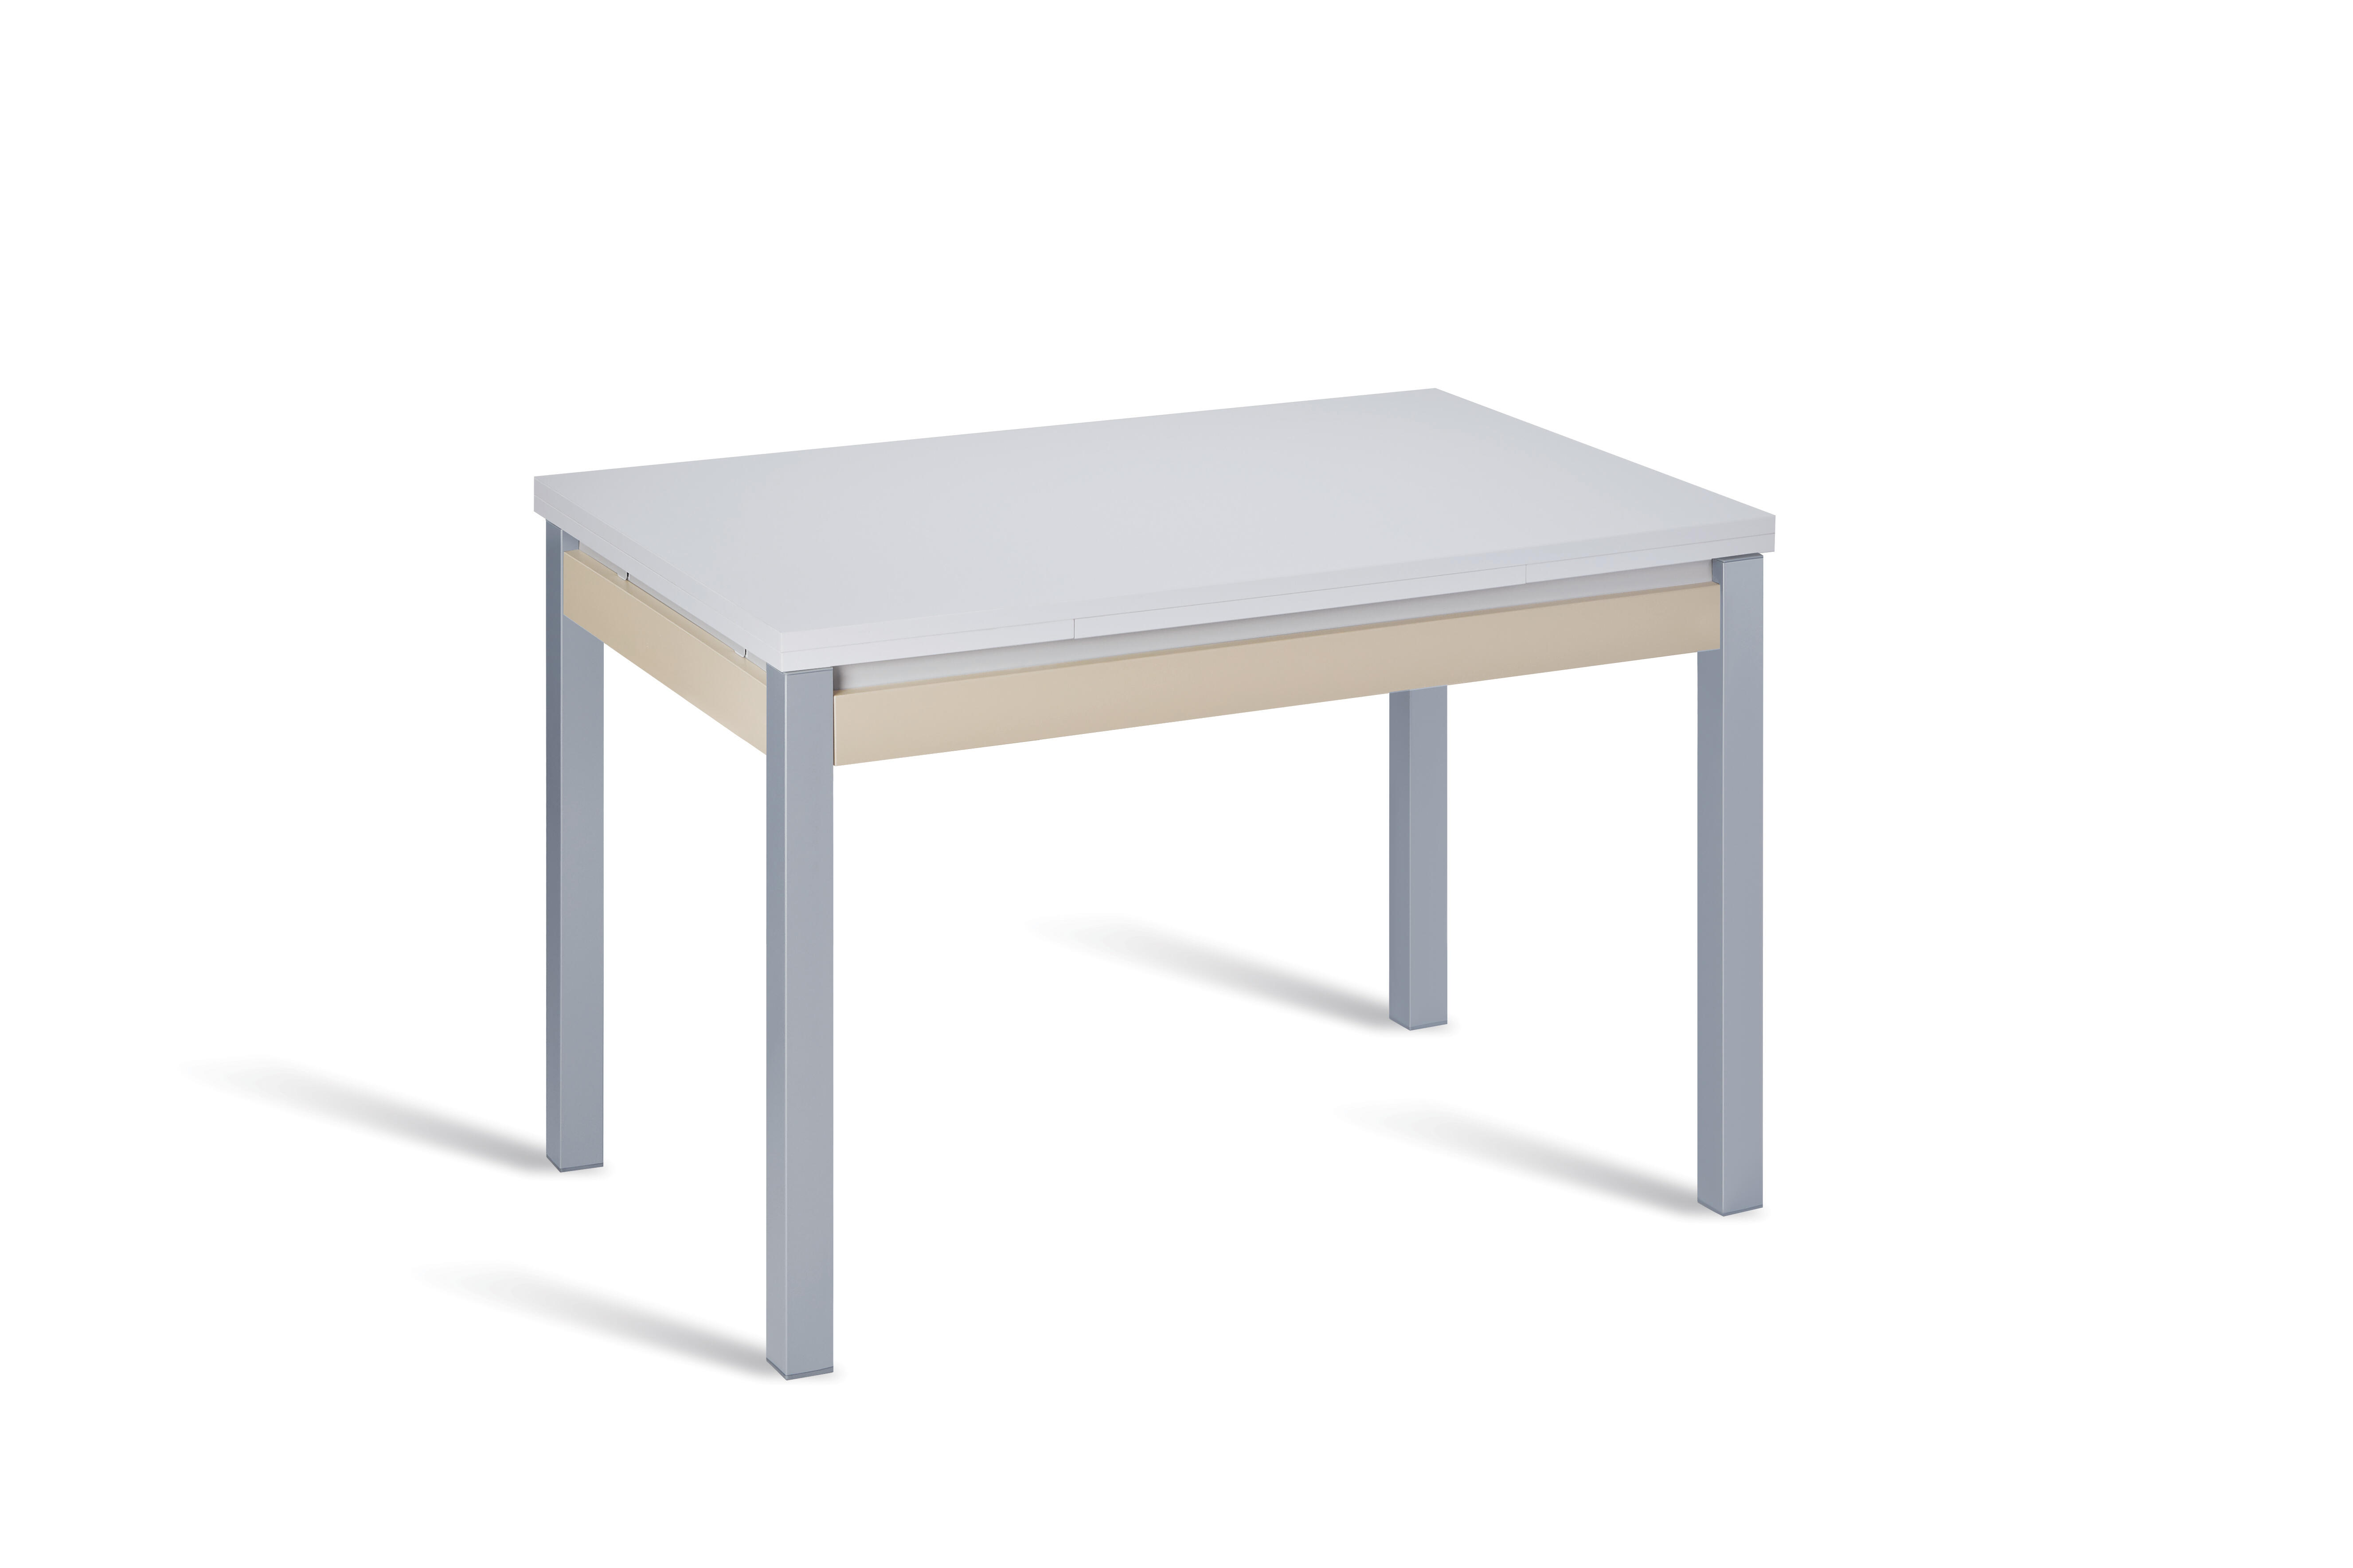 Mesa cocina extensible madera ártico de 100 a 160 cm blanco